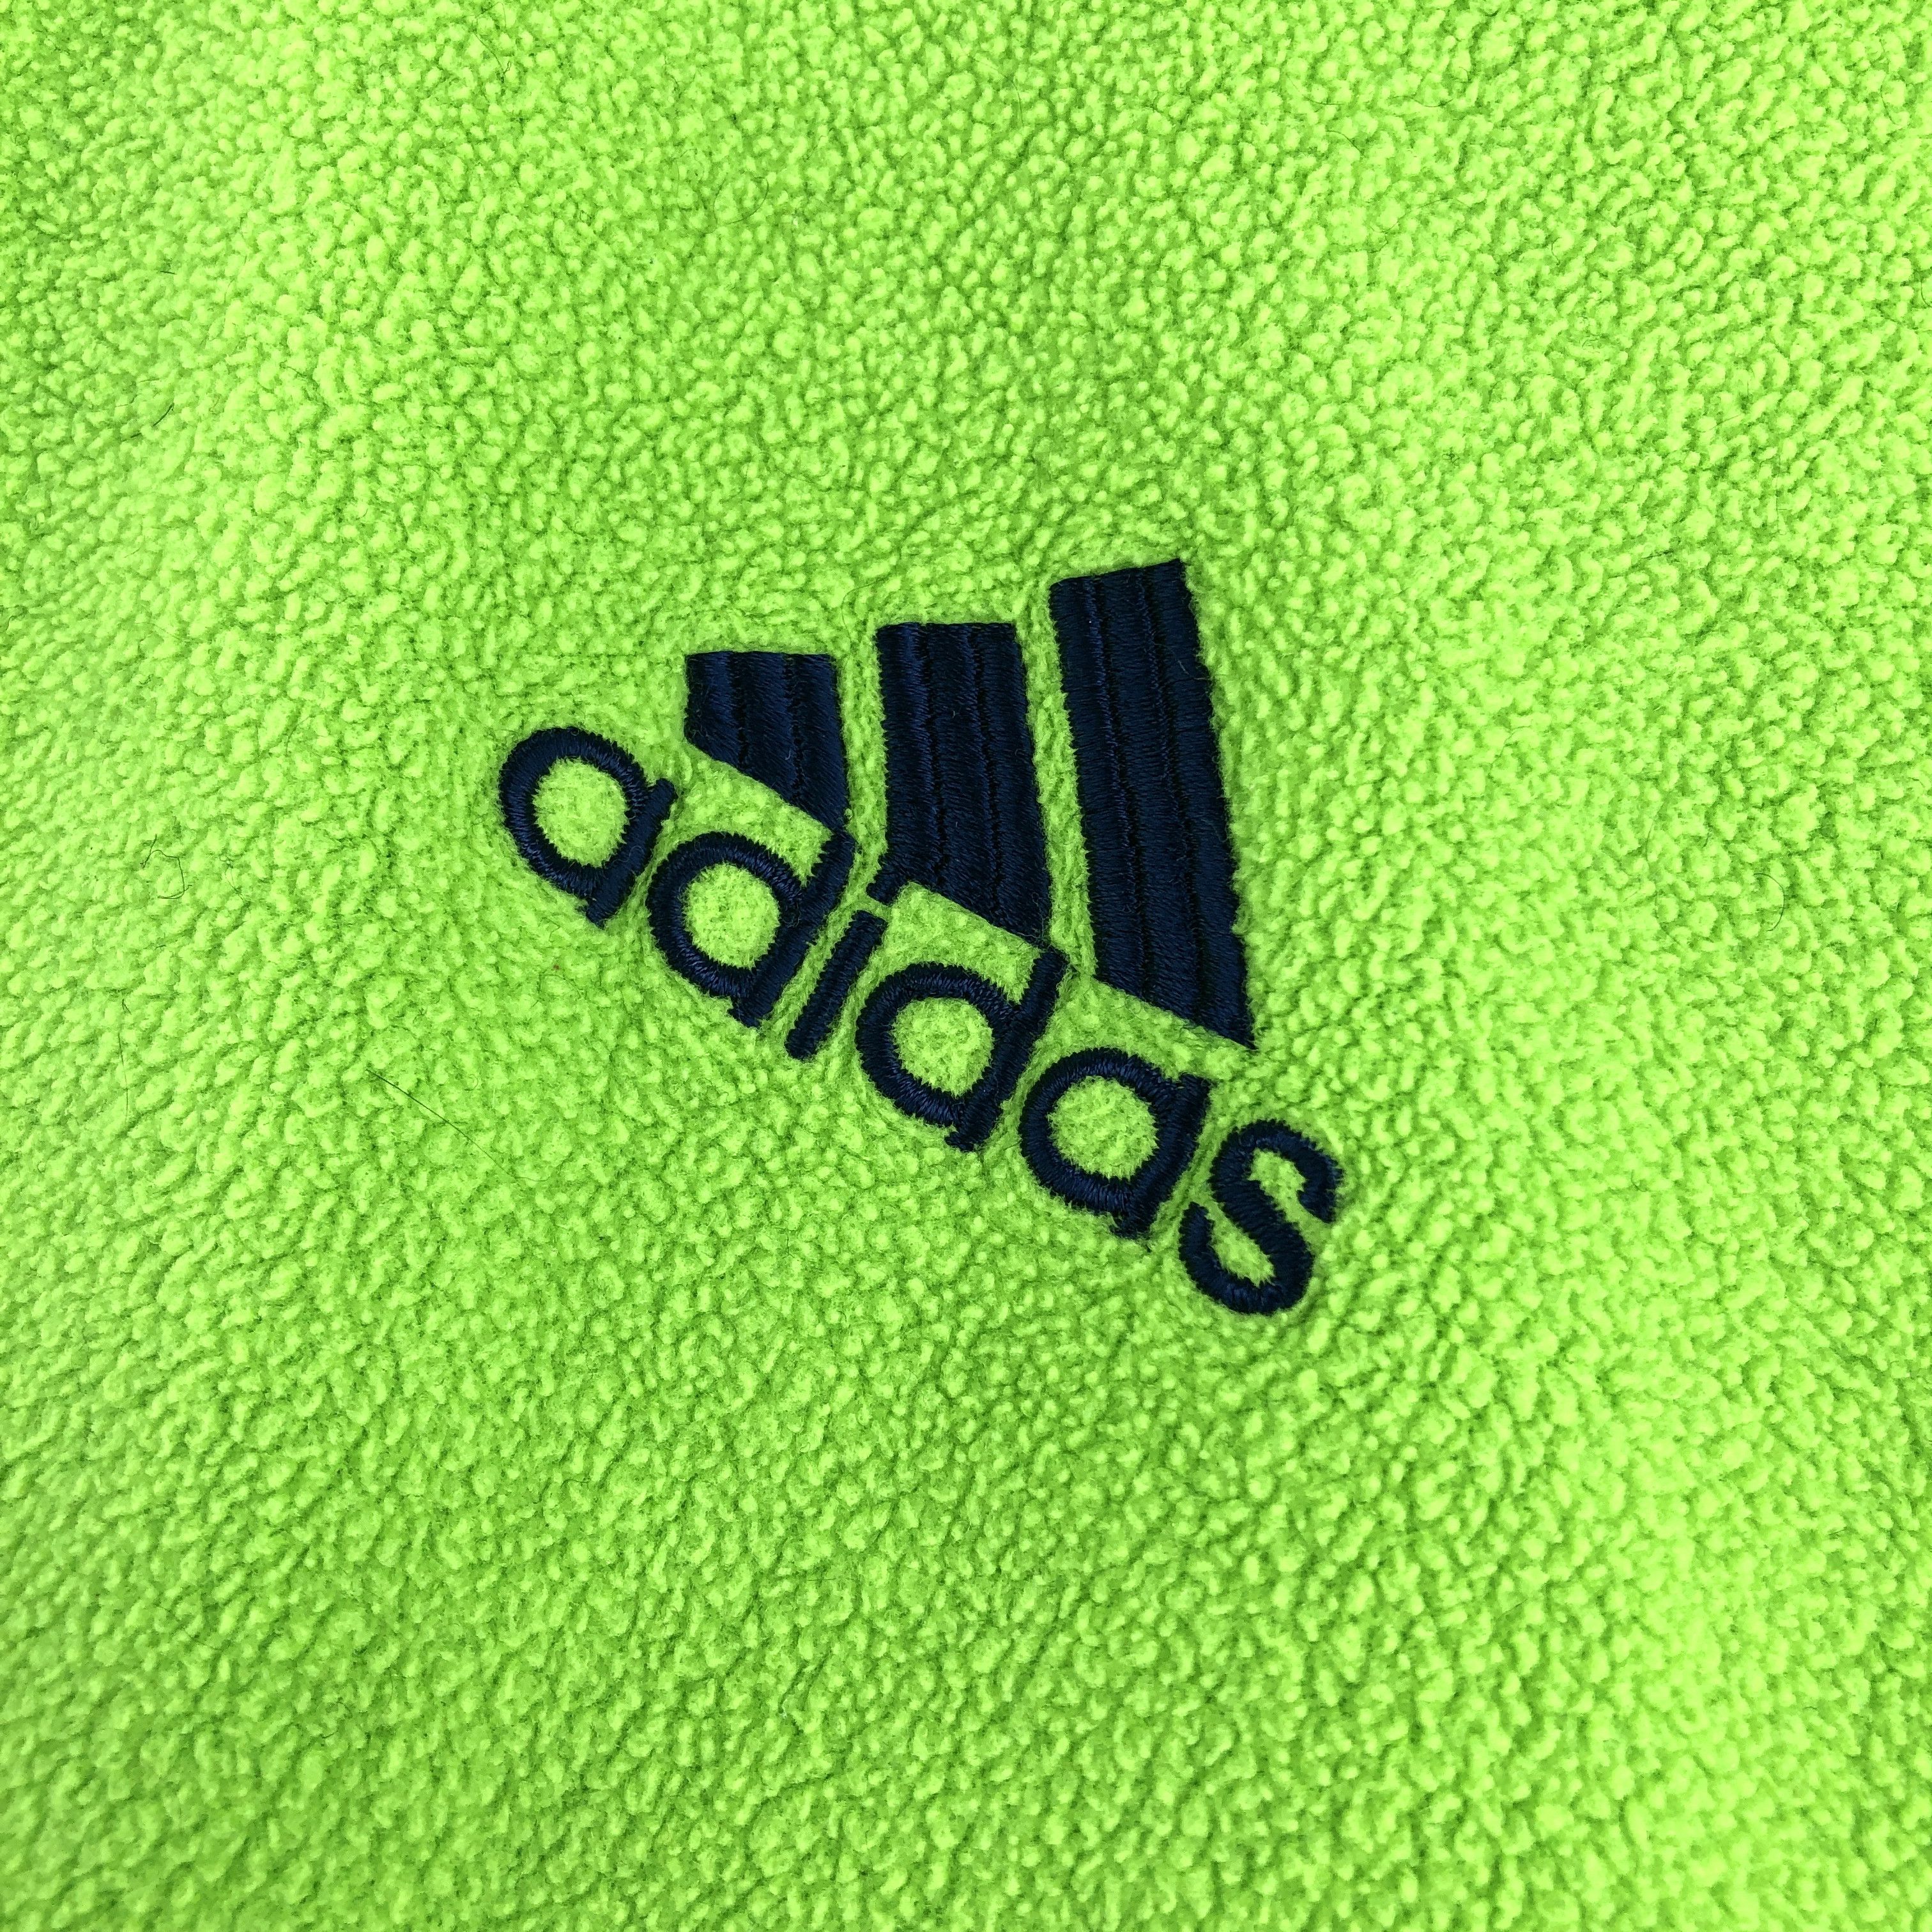 Adidas VTG Adidas Mint-Green Fleece Oversized Jumper Jacket Coat Size US L / EU 52-54 / 3 - 4 Thumbnail